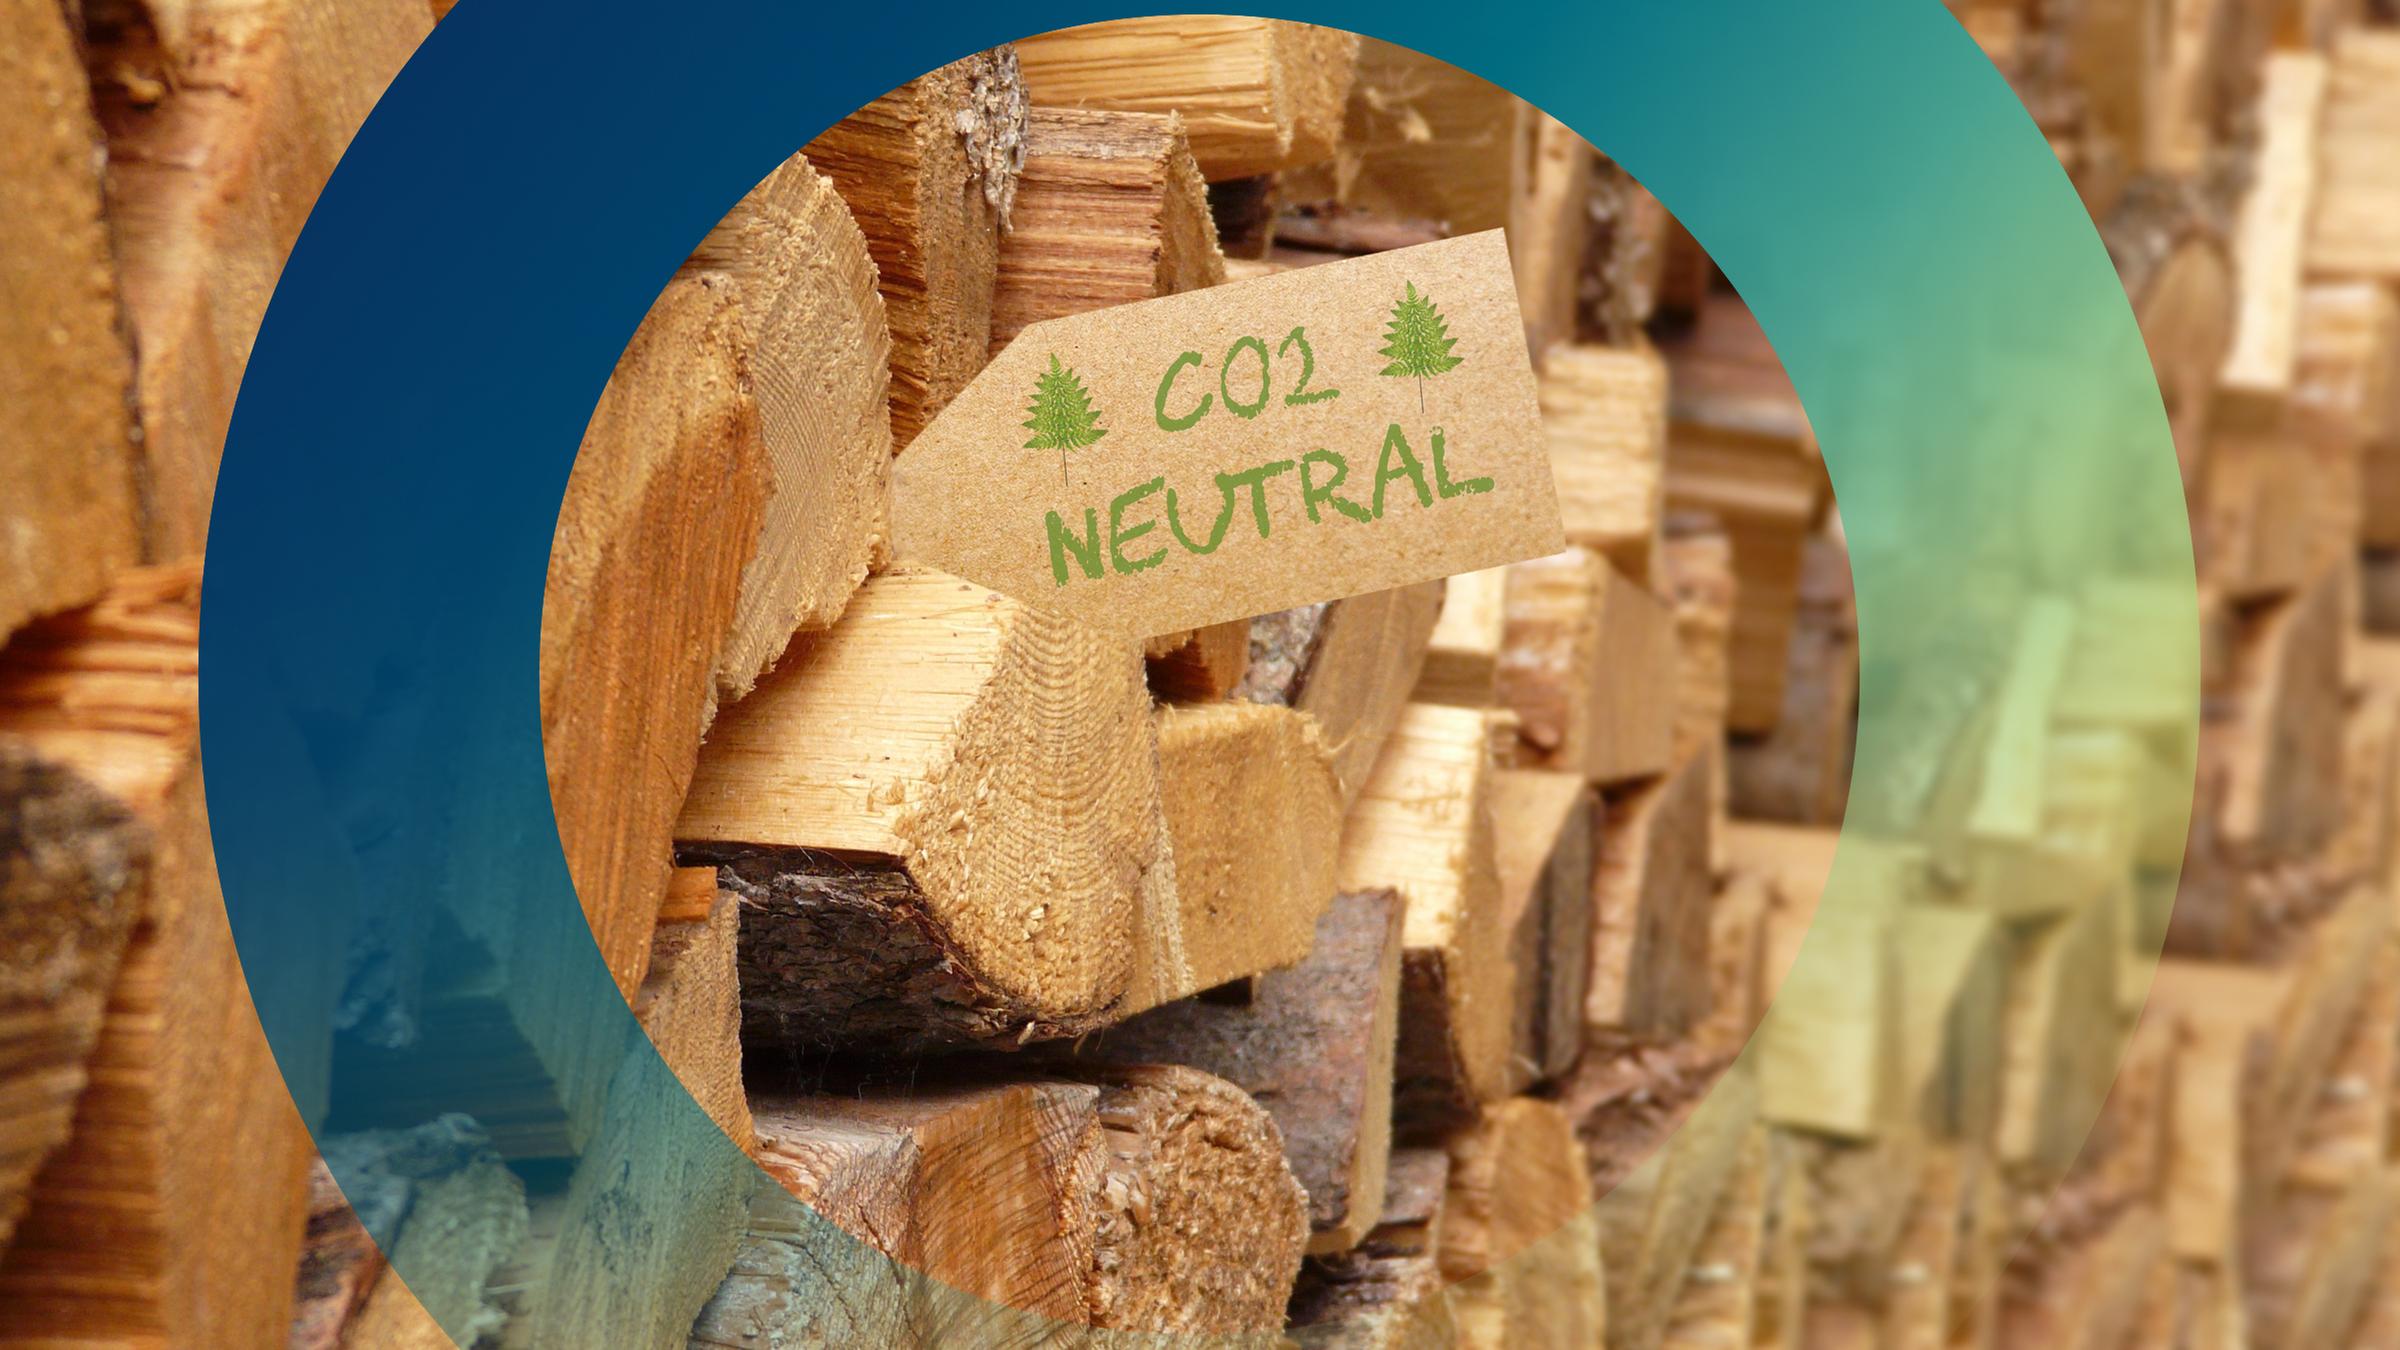 Holzstapel mit Etikett "CO2-neutral"